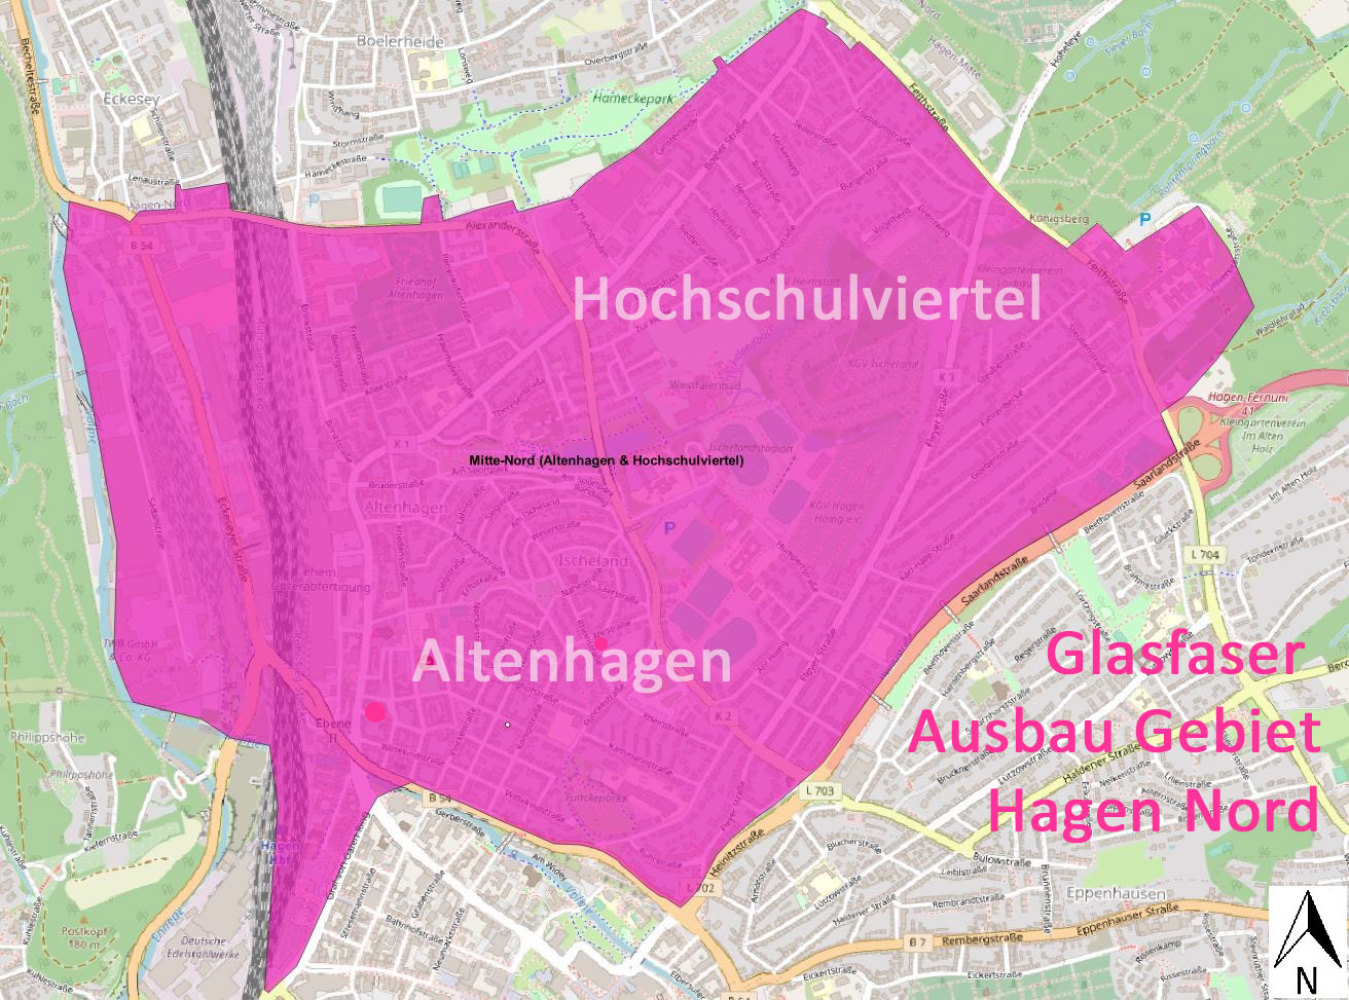 Glasfaser Ausbaugebiet - Hagen Mitte-Nord - Hochschulviertel und Altenhagen